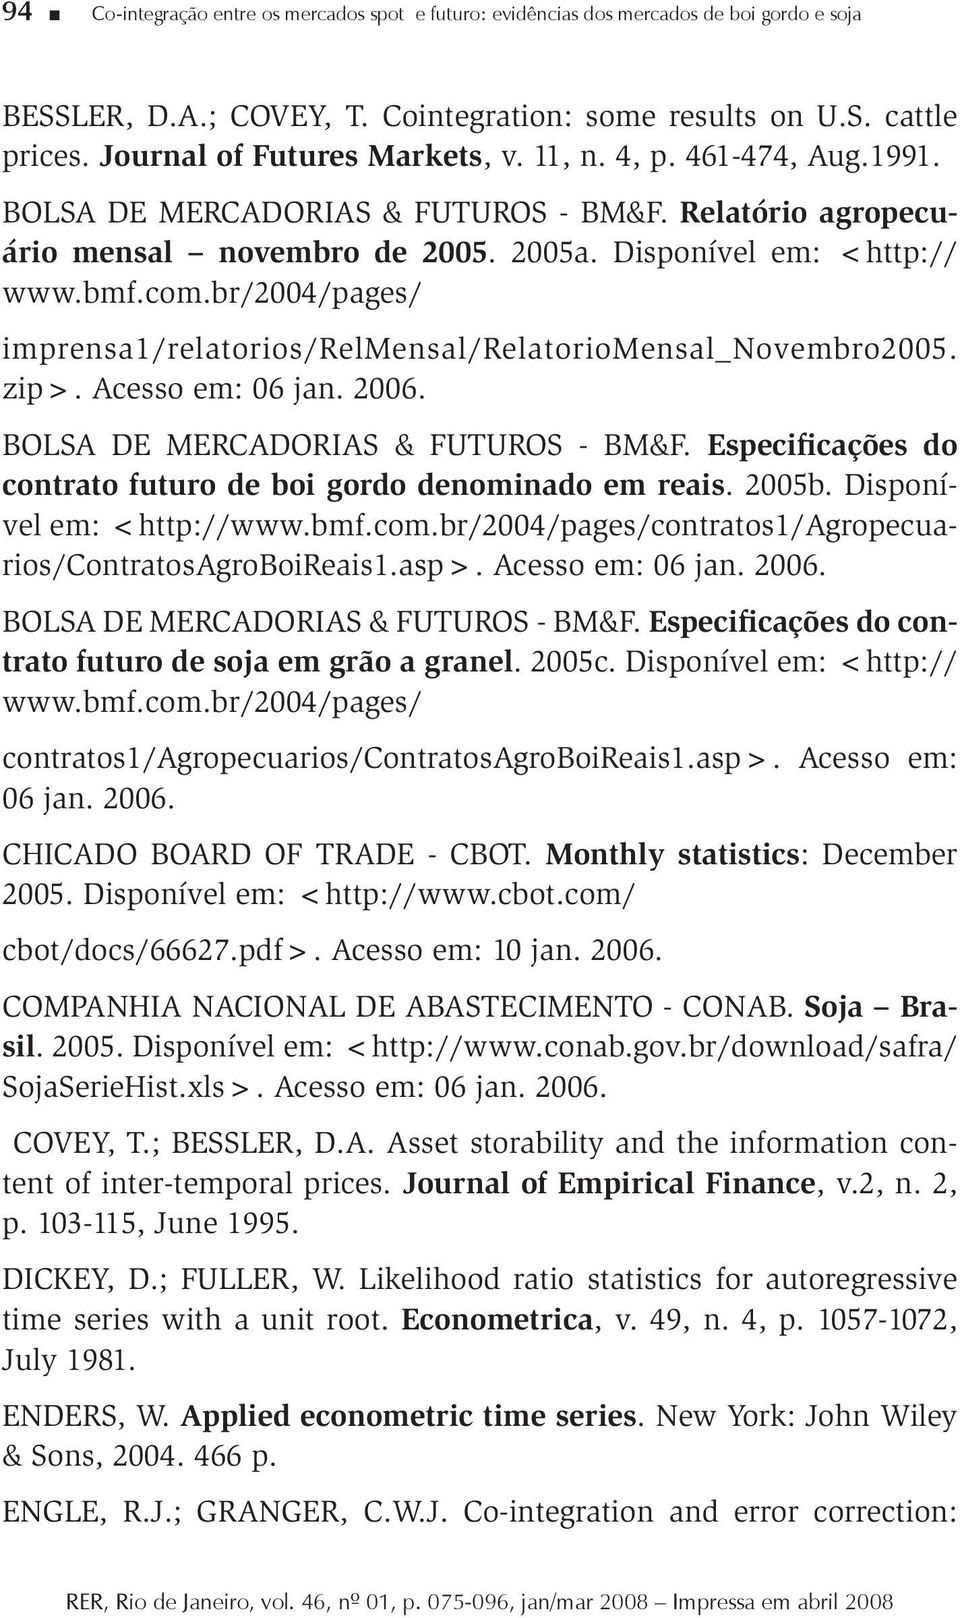 br/2004/pages/ imprensa1/relatorios/relmensal/relatoriomensal_novembro2005. zip>. Acesso em: 06 jan. 2006. BOLSA DE MERCADORIAS & FUTUROS - BM&F.